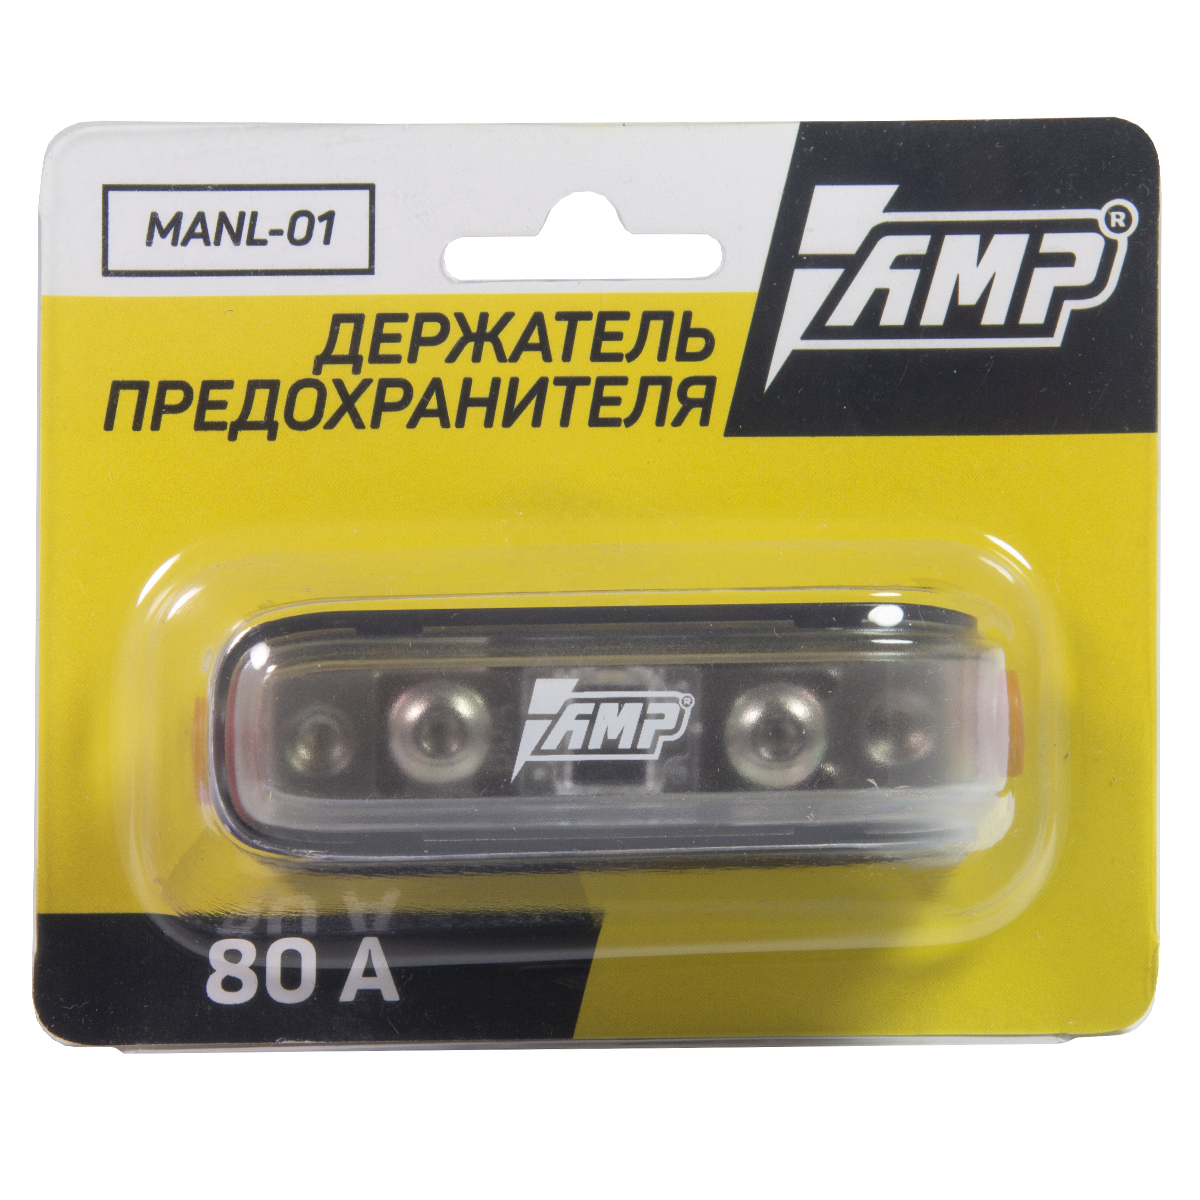 Держатель предохранителя AMP MANL-01 (80 A)